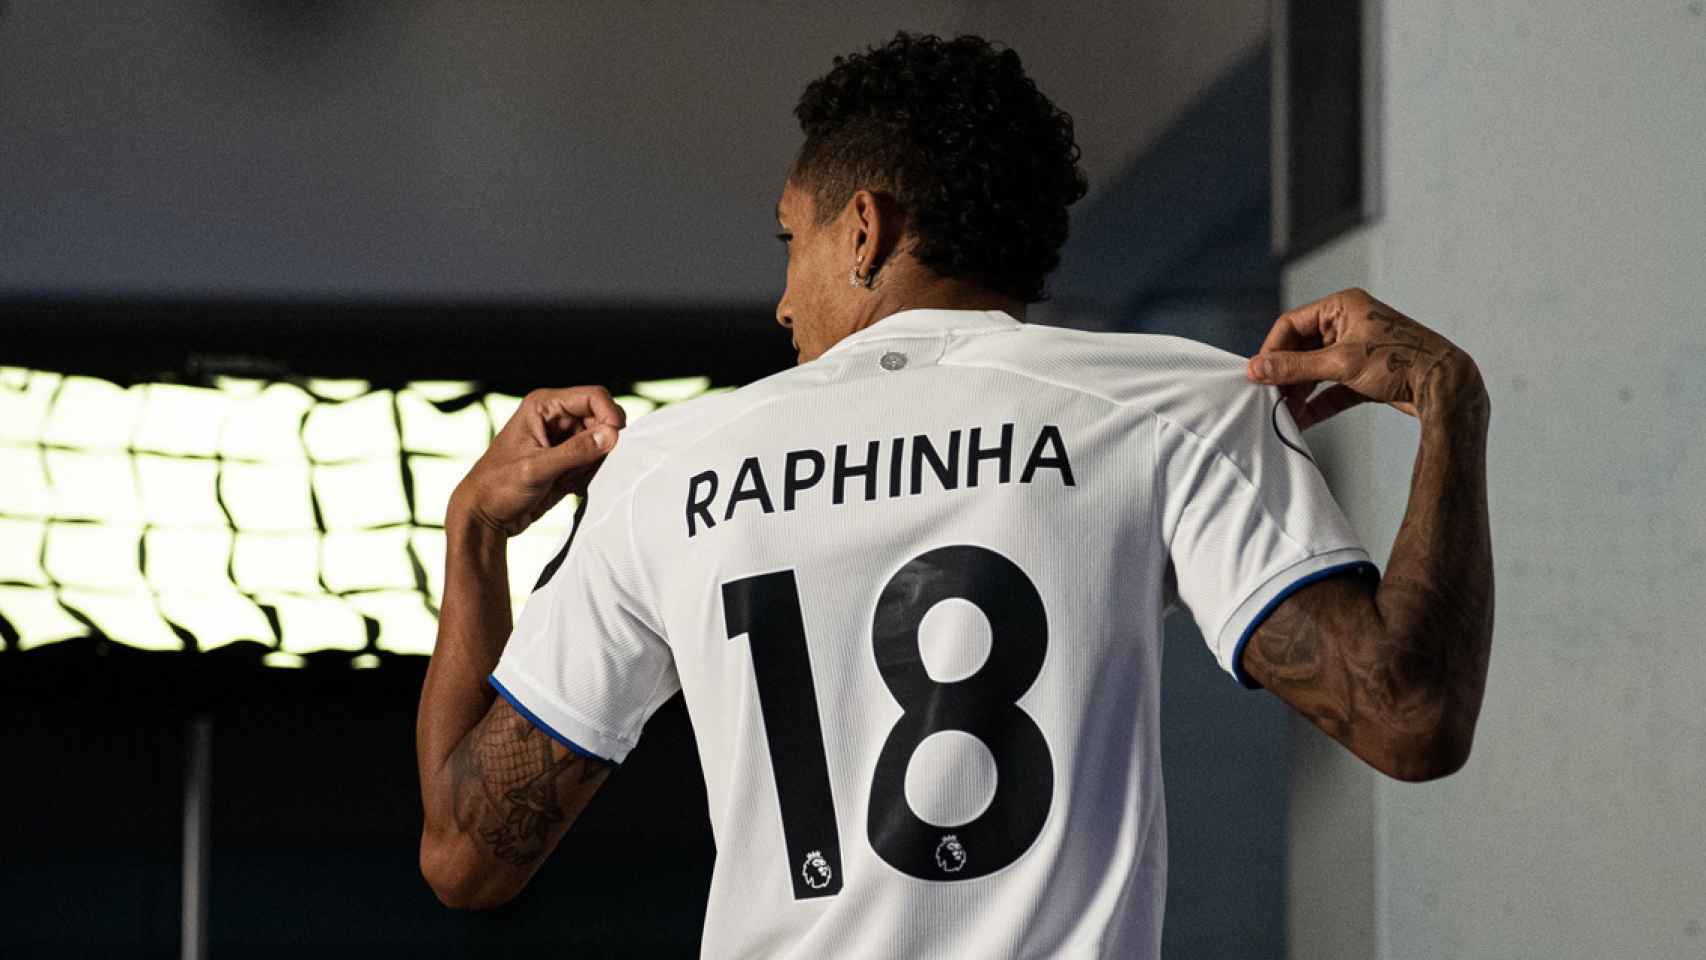 Raphinha, el día de su presentación como jugador del Leeds United / LEEDS